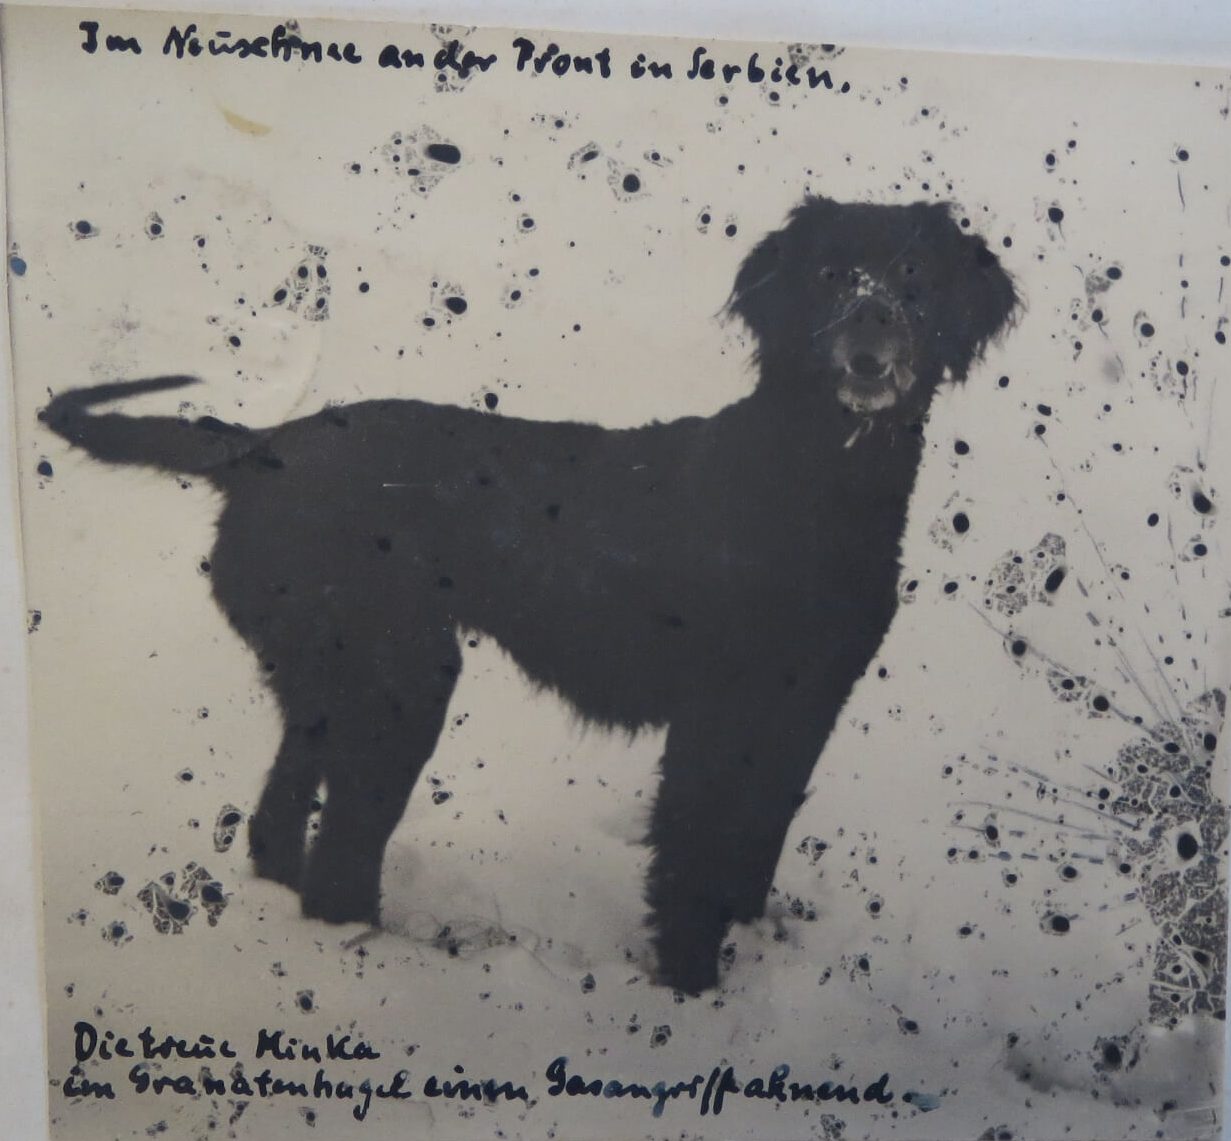 Text: „Im Neuschnee an der Front in Serbien. Die treue Minka im Granathagel einen Gasangriff ahnend.“ Feldpostkarte an Wagenführ vom 27.10.1915